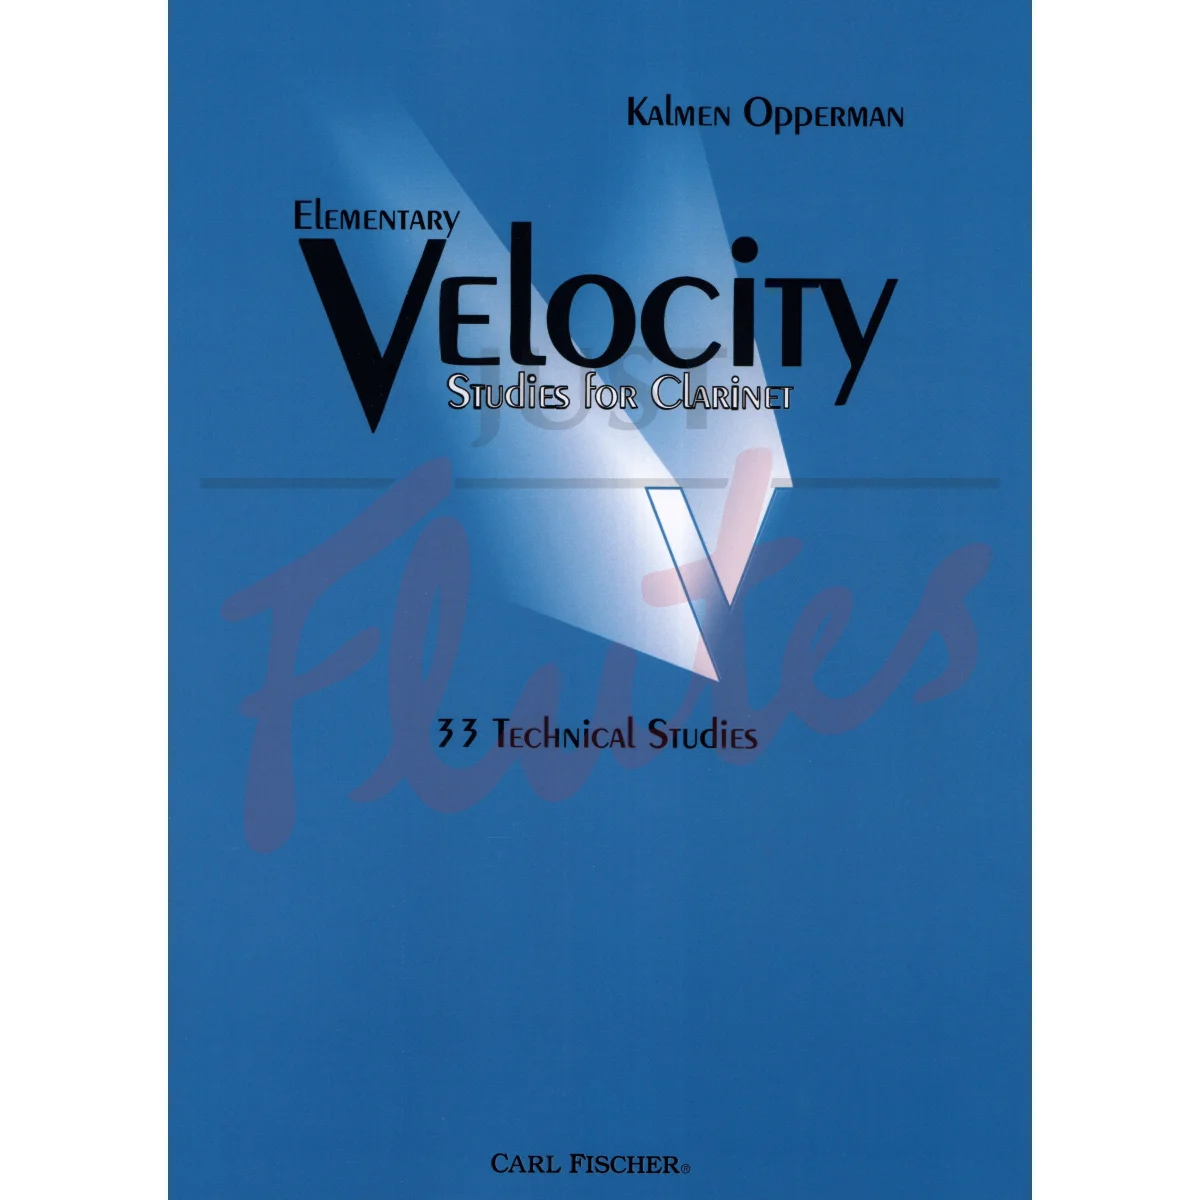 Elementary Velocity Studies: 33 Technical Studies